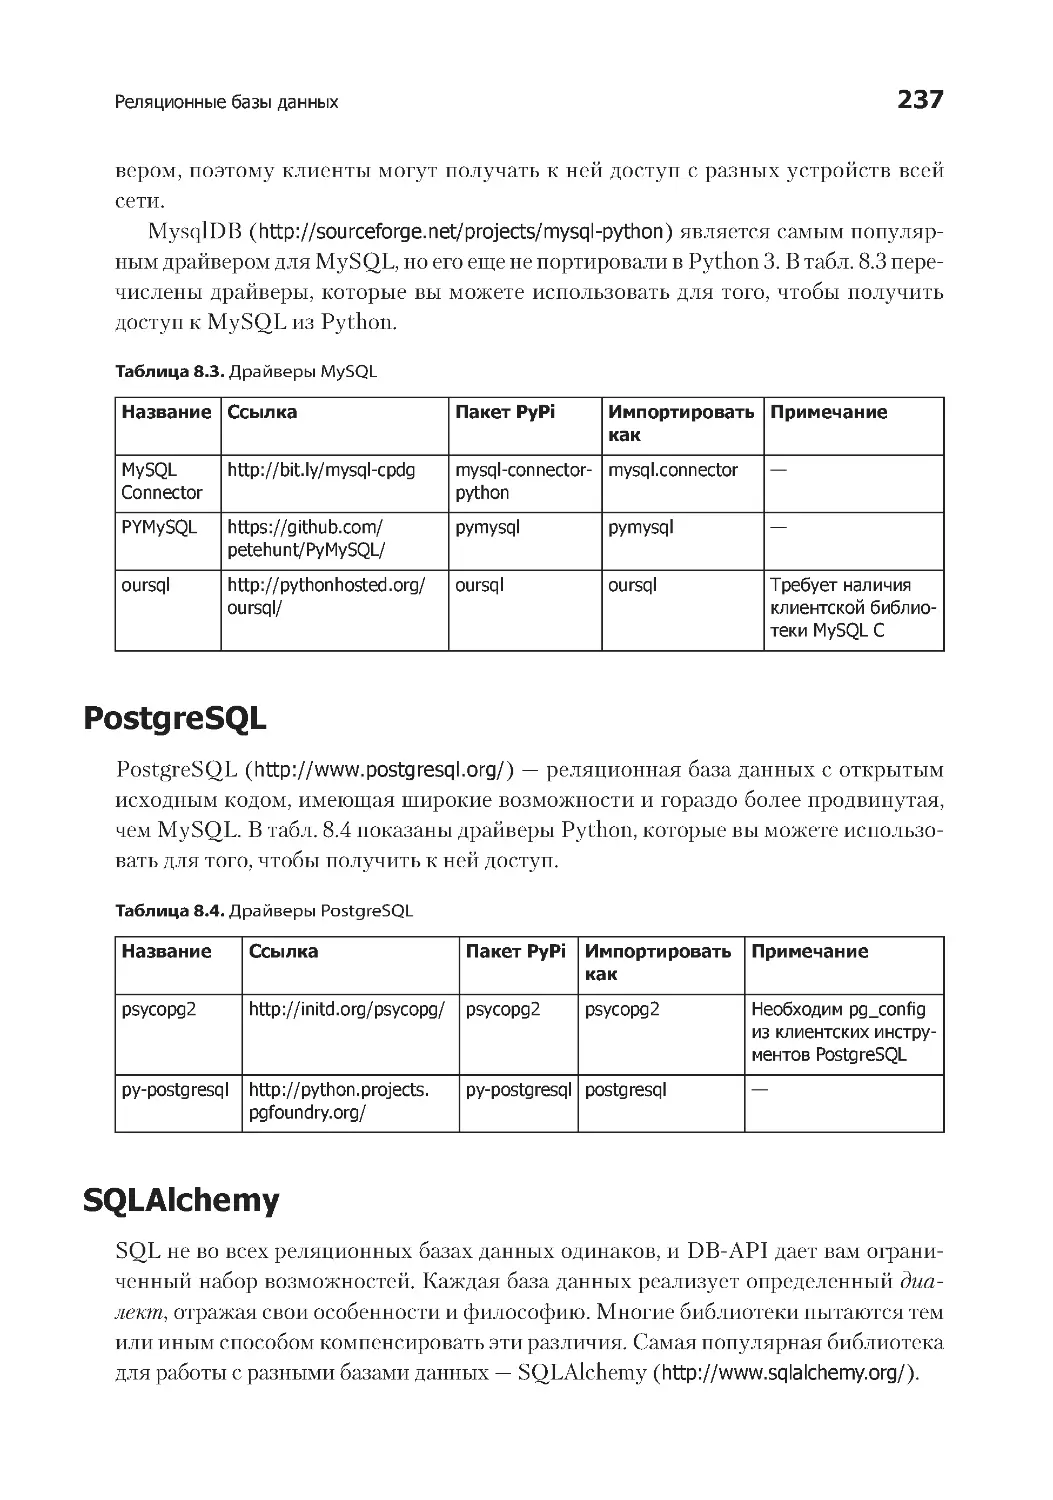 PostgreSQL
SQLAlchemy